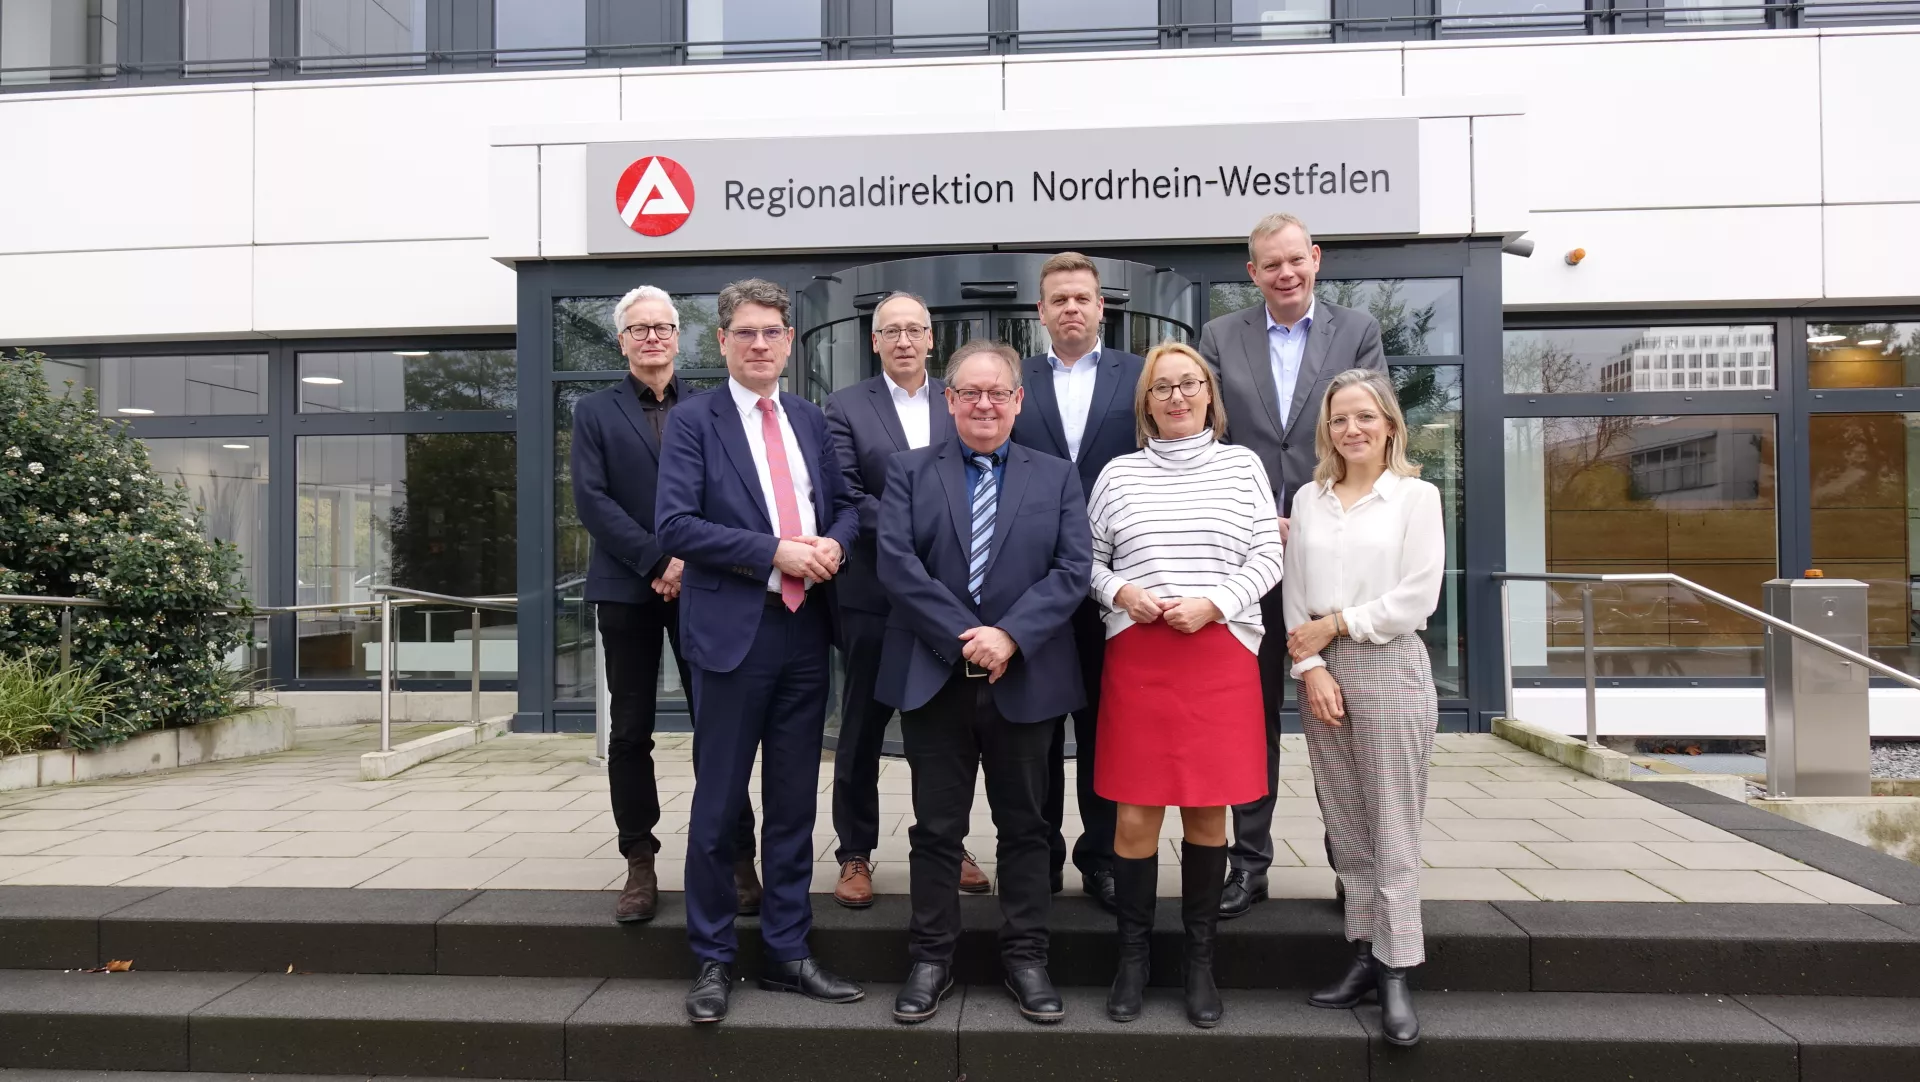 Auf dem Bild sieht man die Mitglieder des arbeitsmarktpolitischen Beirates der Regionaldirektion NRW vor dem Gebäude der Regionaldirektion.  Im Hintergrund  ist das Logo der Regionaldirektion über dem Hauseingang zu sehen. 